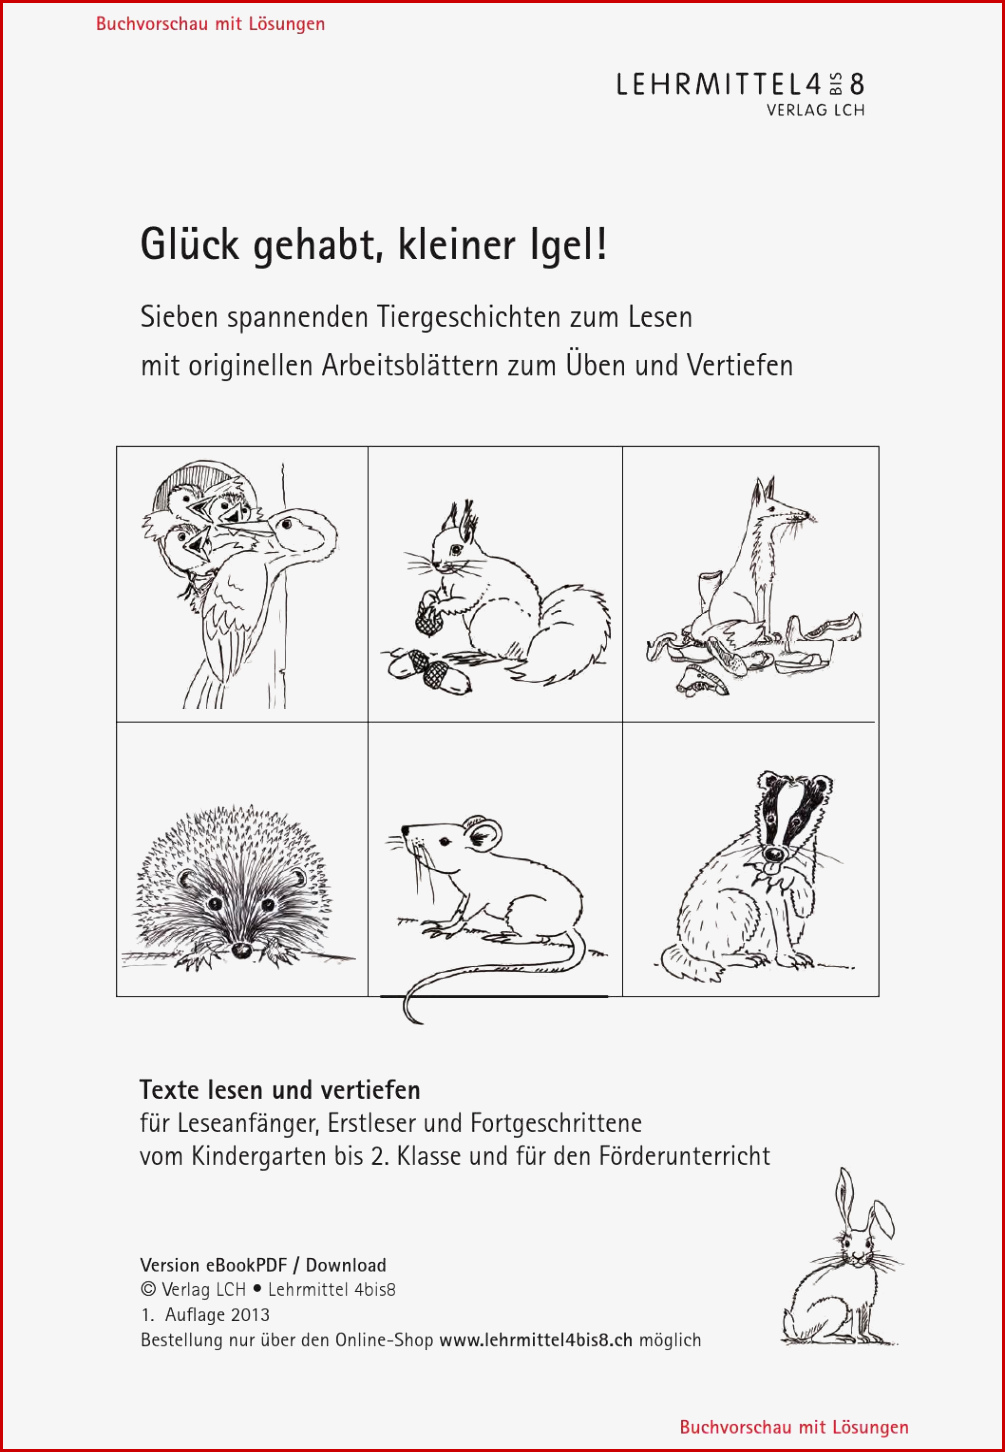 Ebookpdf Kleinerigel Webvorschau by Lehrmittel 4bis8 issuu